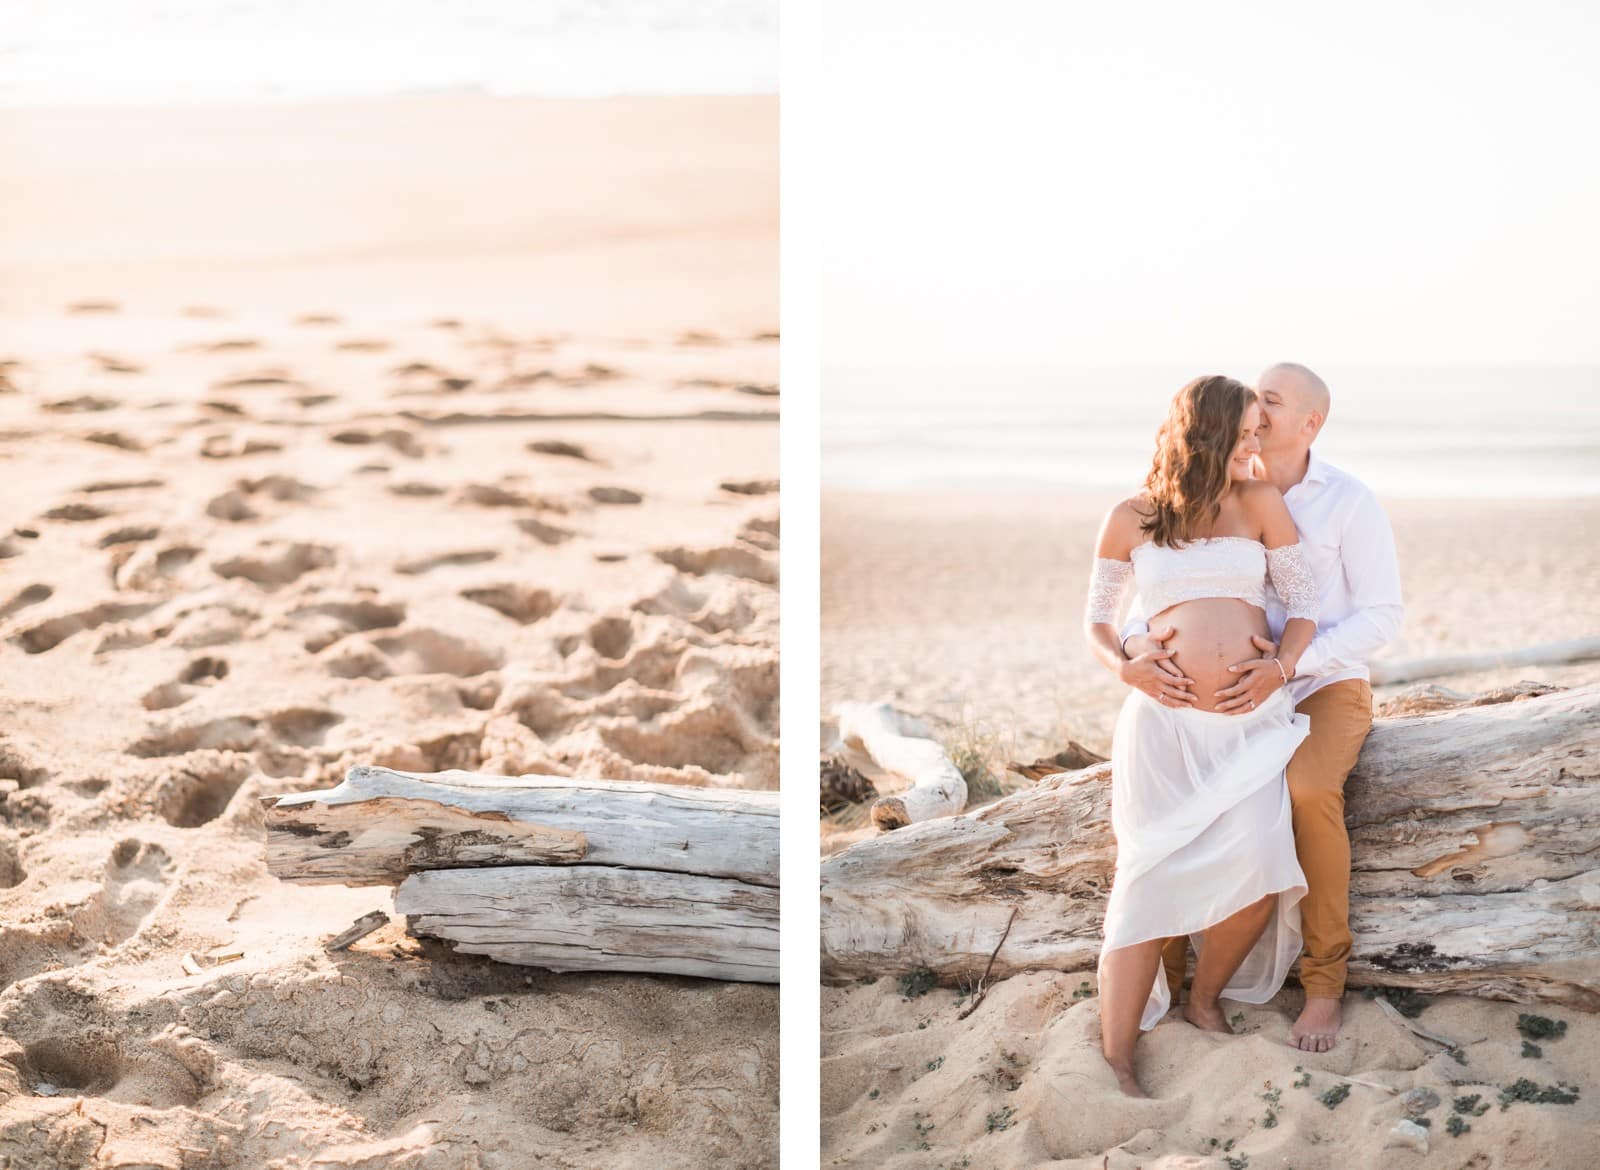 Photographie de Mathieu Dété, photographe de mariage et grossesse à Saint-Pierre de la Réunion 974, présentant des futurs parents amoureux sur la plage au coucher de soleil